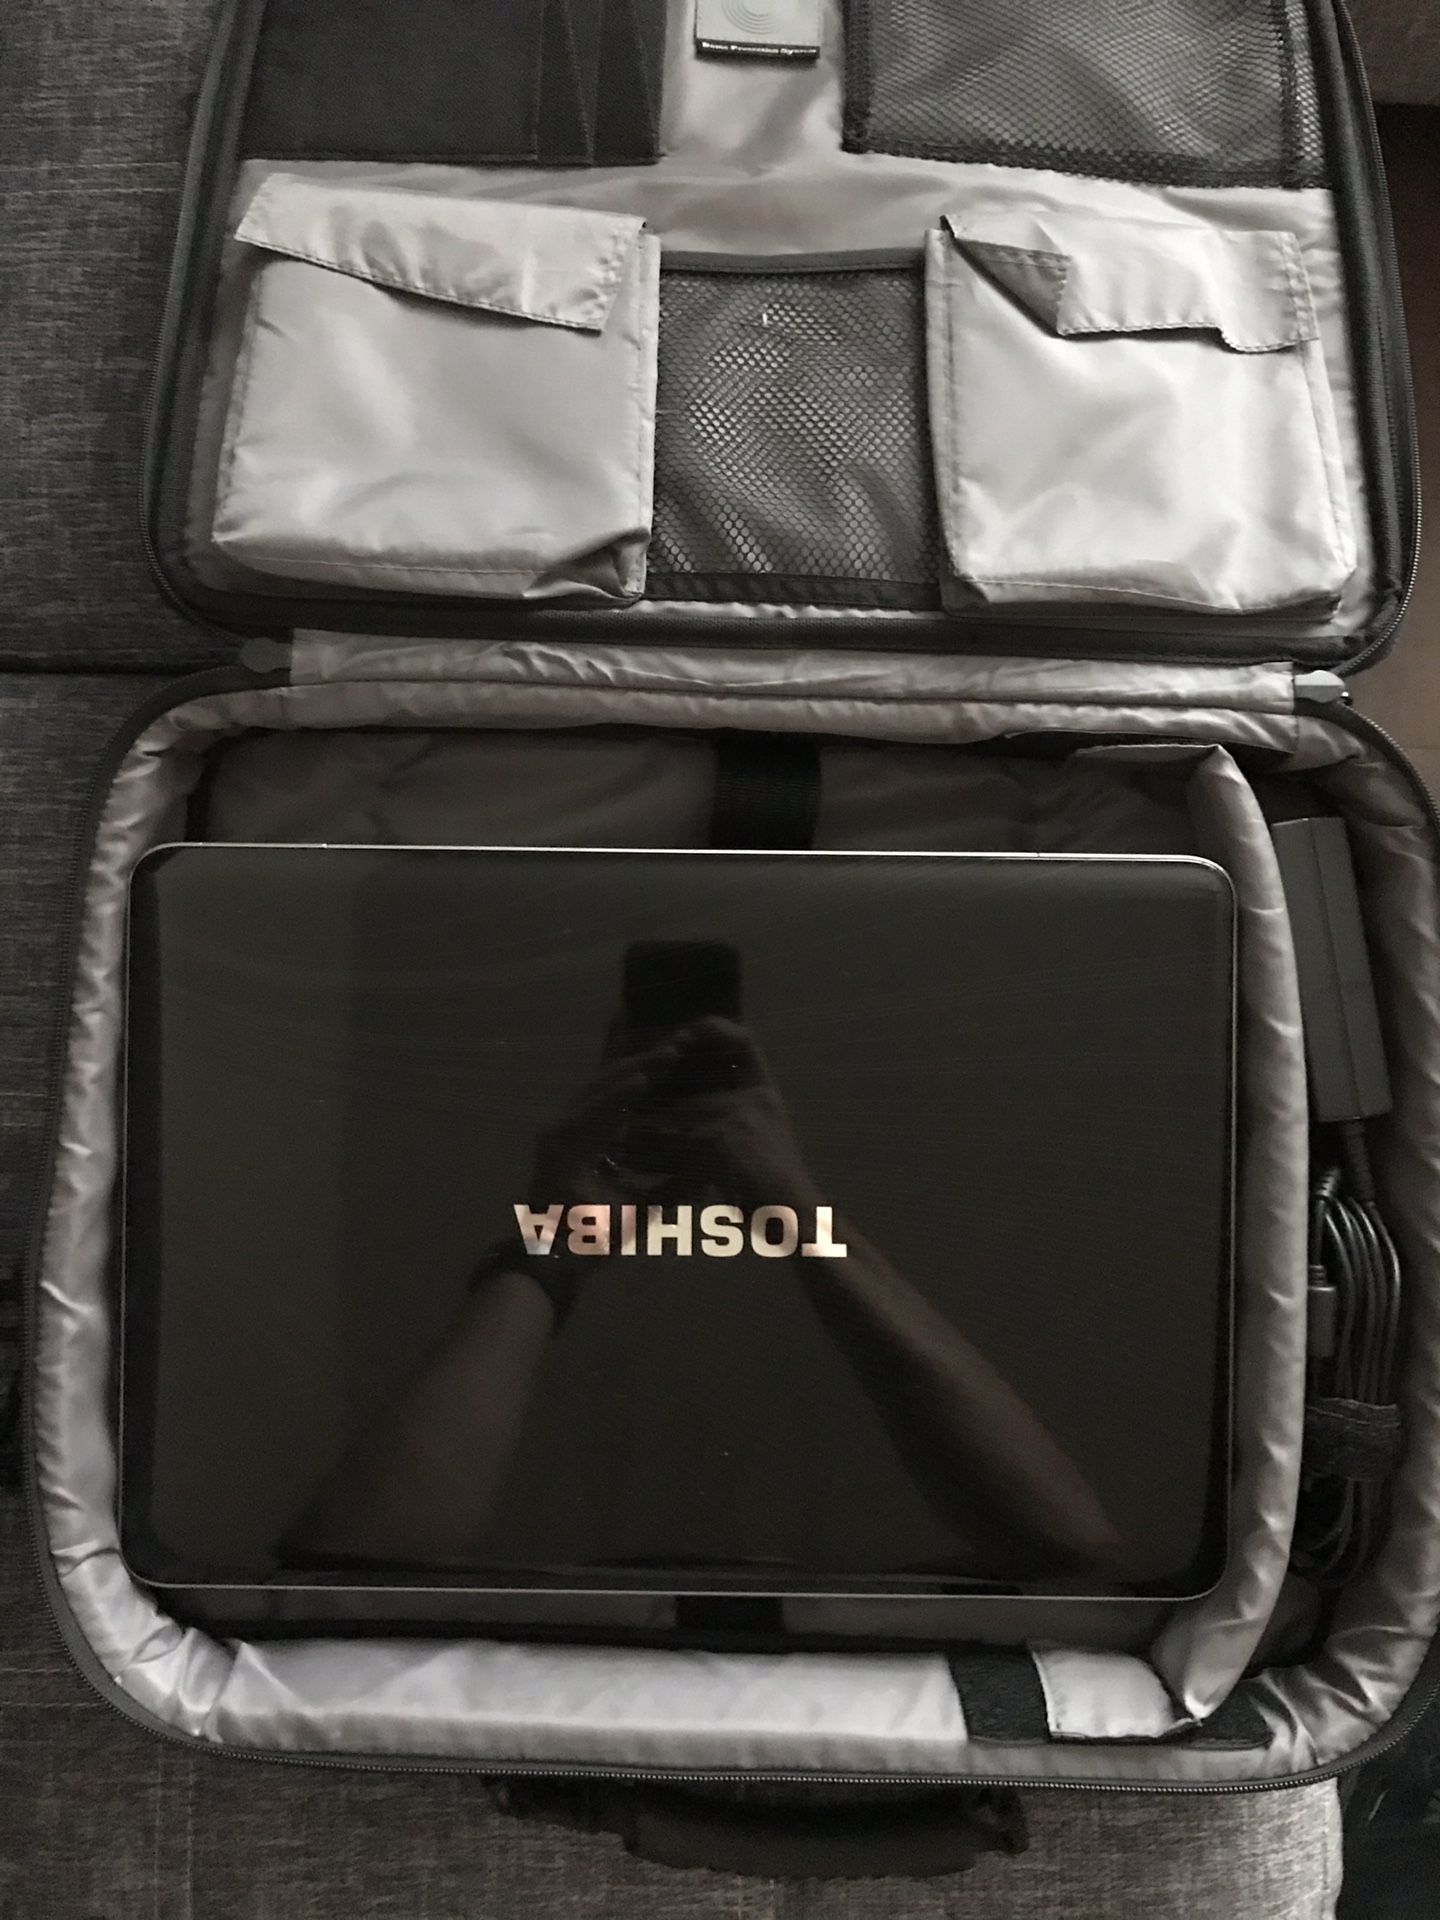 Toshiba Satellite A505-S6005 Laptop with Targus Laptop bag